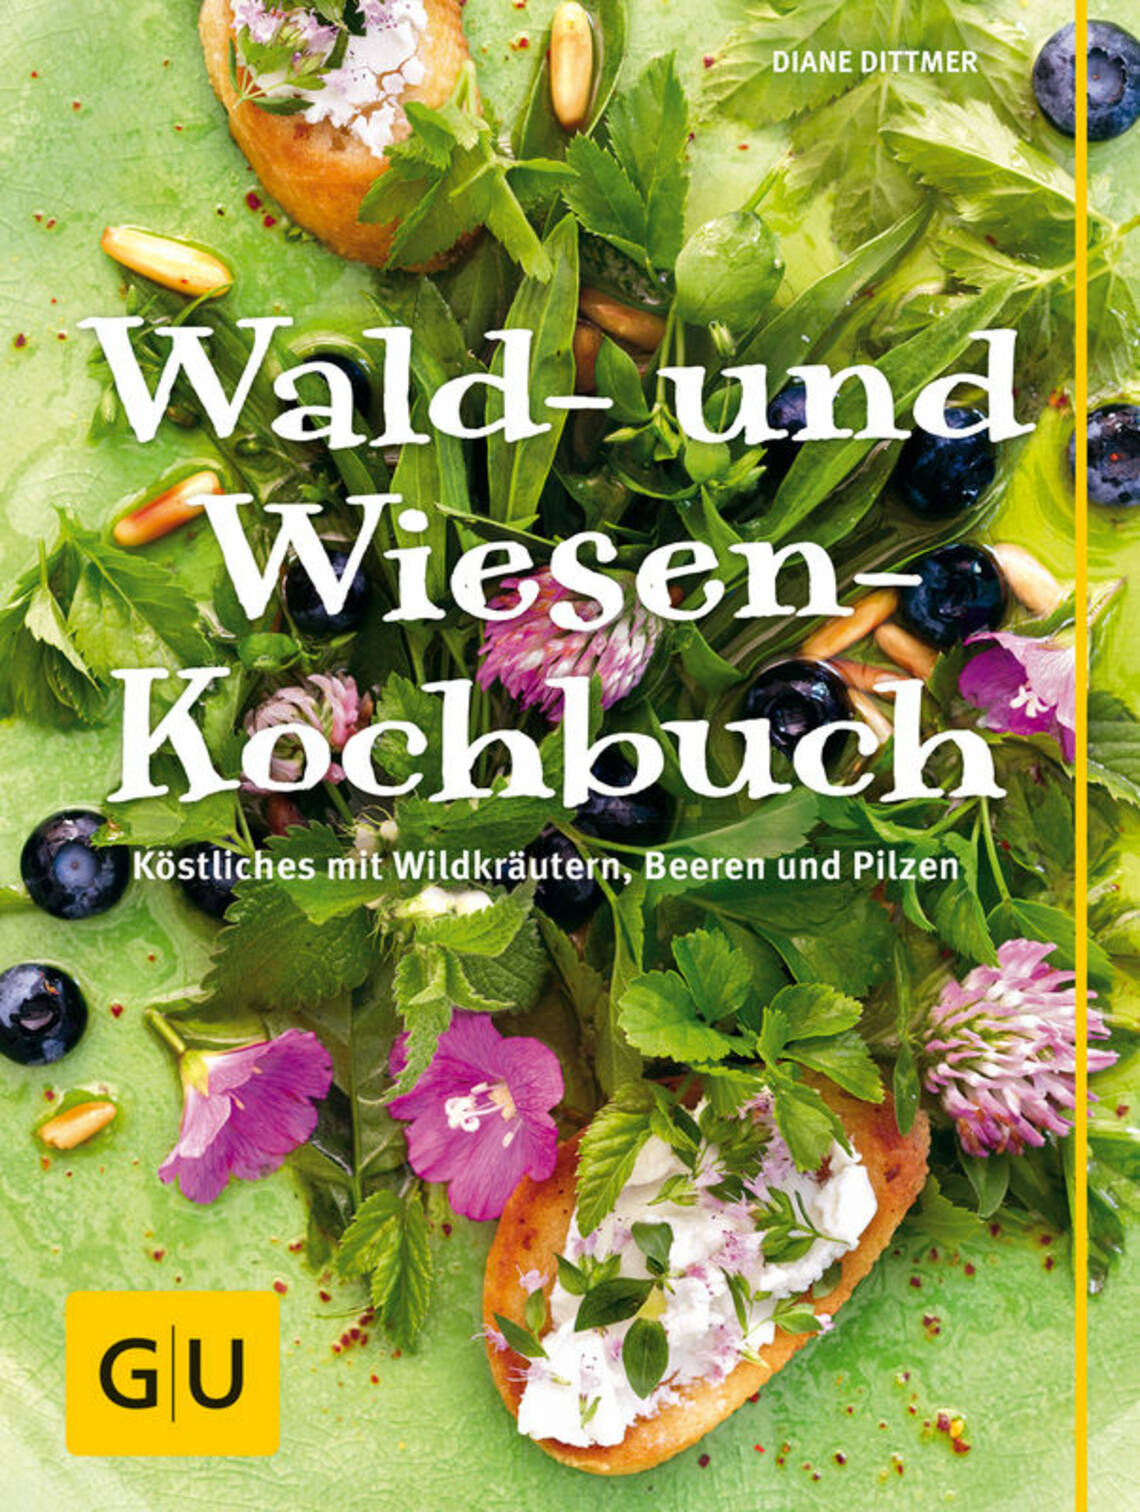 Wald- und Wiesen-Kochbuch von Diane Dittmer